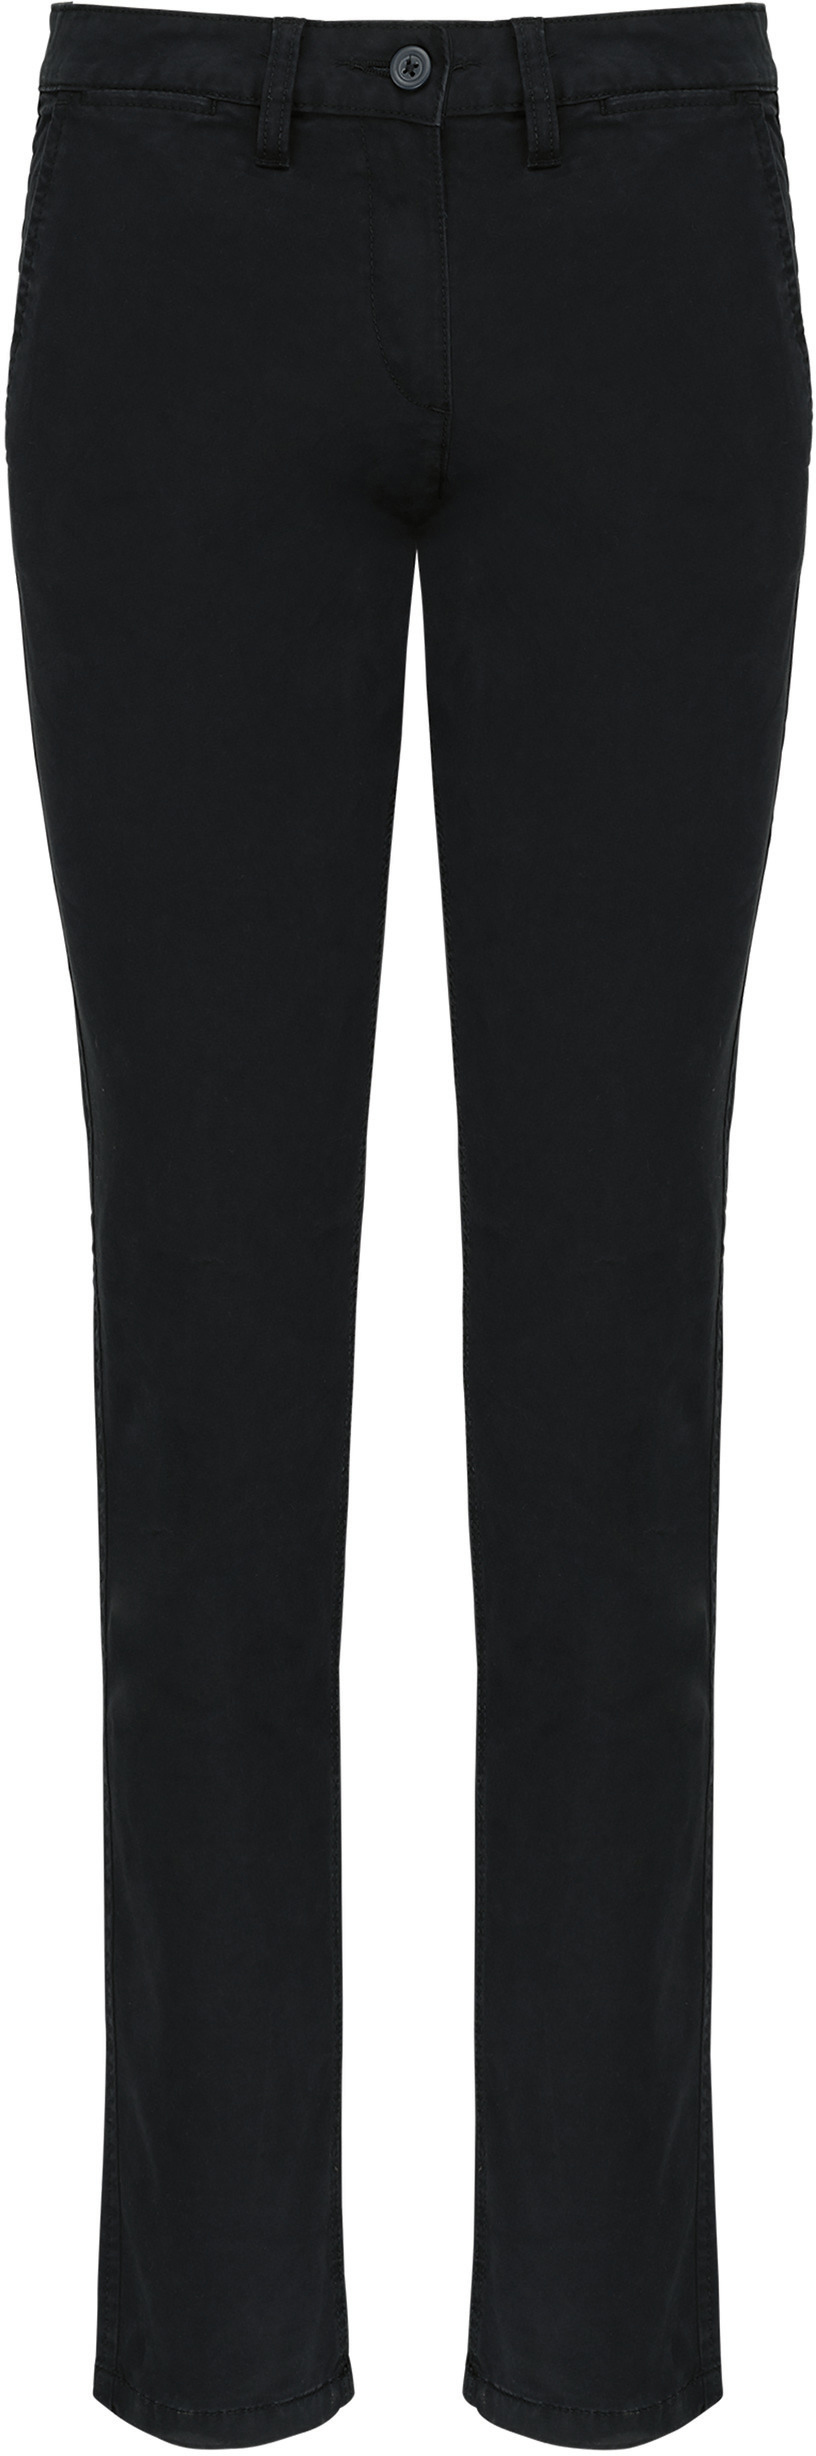 Dámské kalhoty CHINO K741 Barva: černá, Velikost: 38